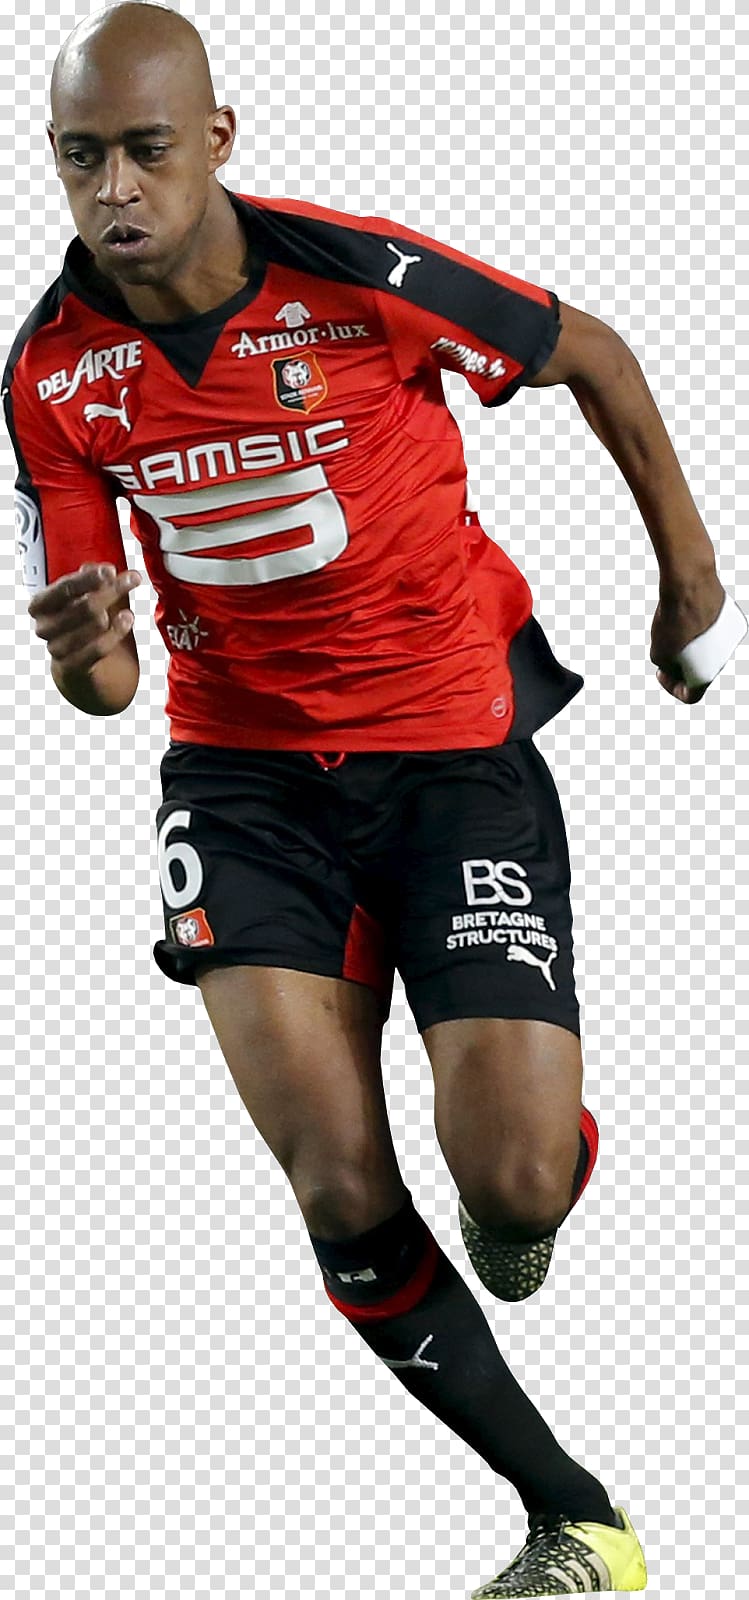 Gelson Fernandes Football player Stade Rennais F.C. Team sport, american football running backs transparent background PNG clipart